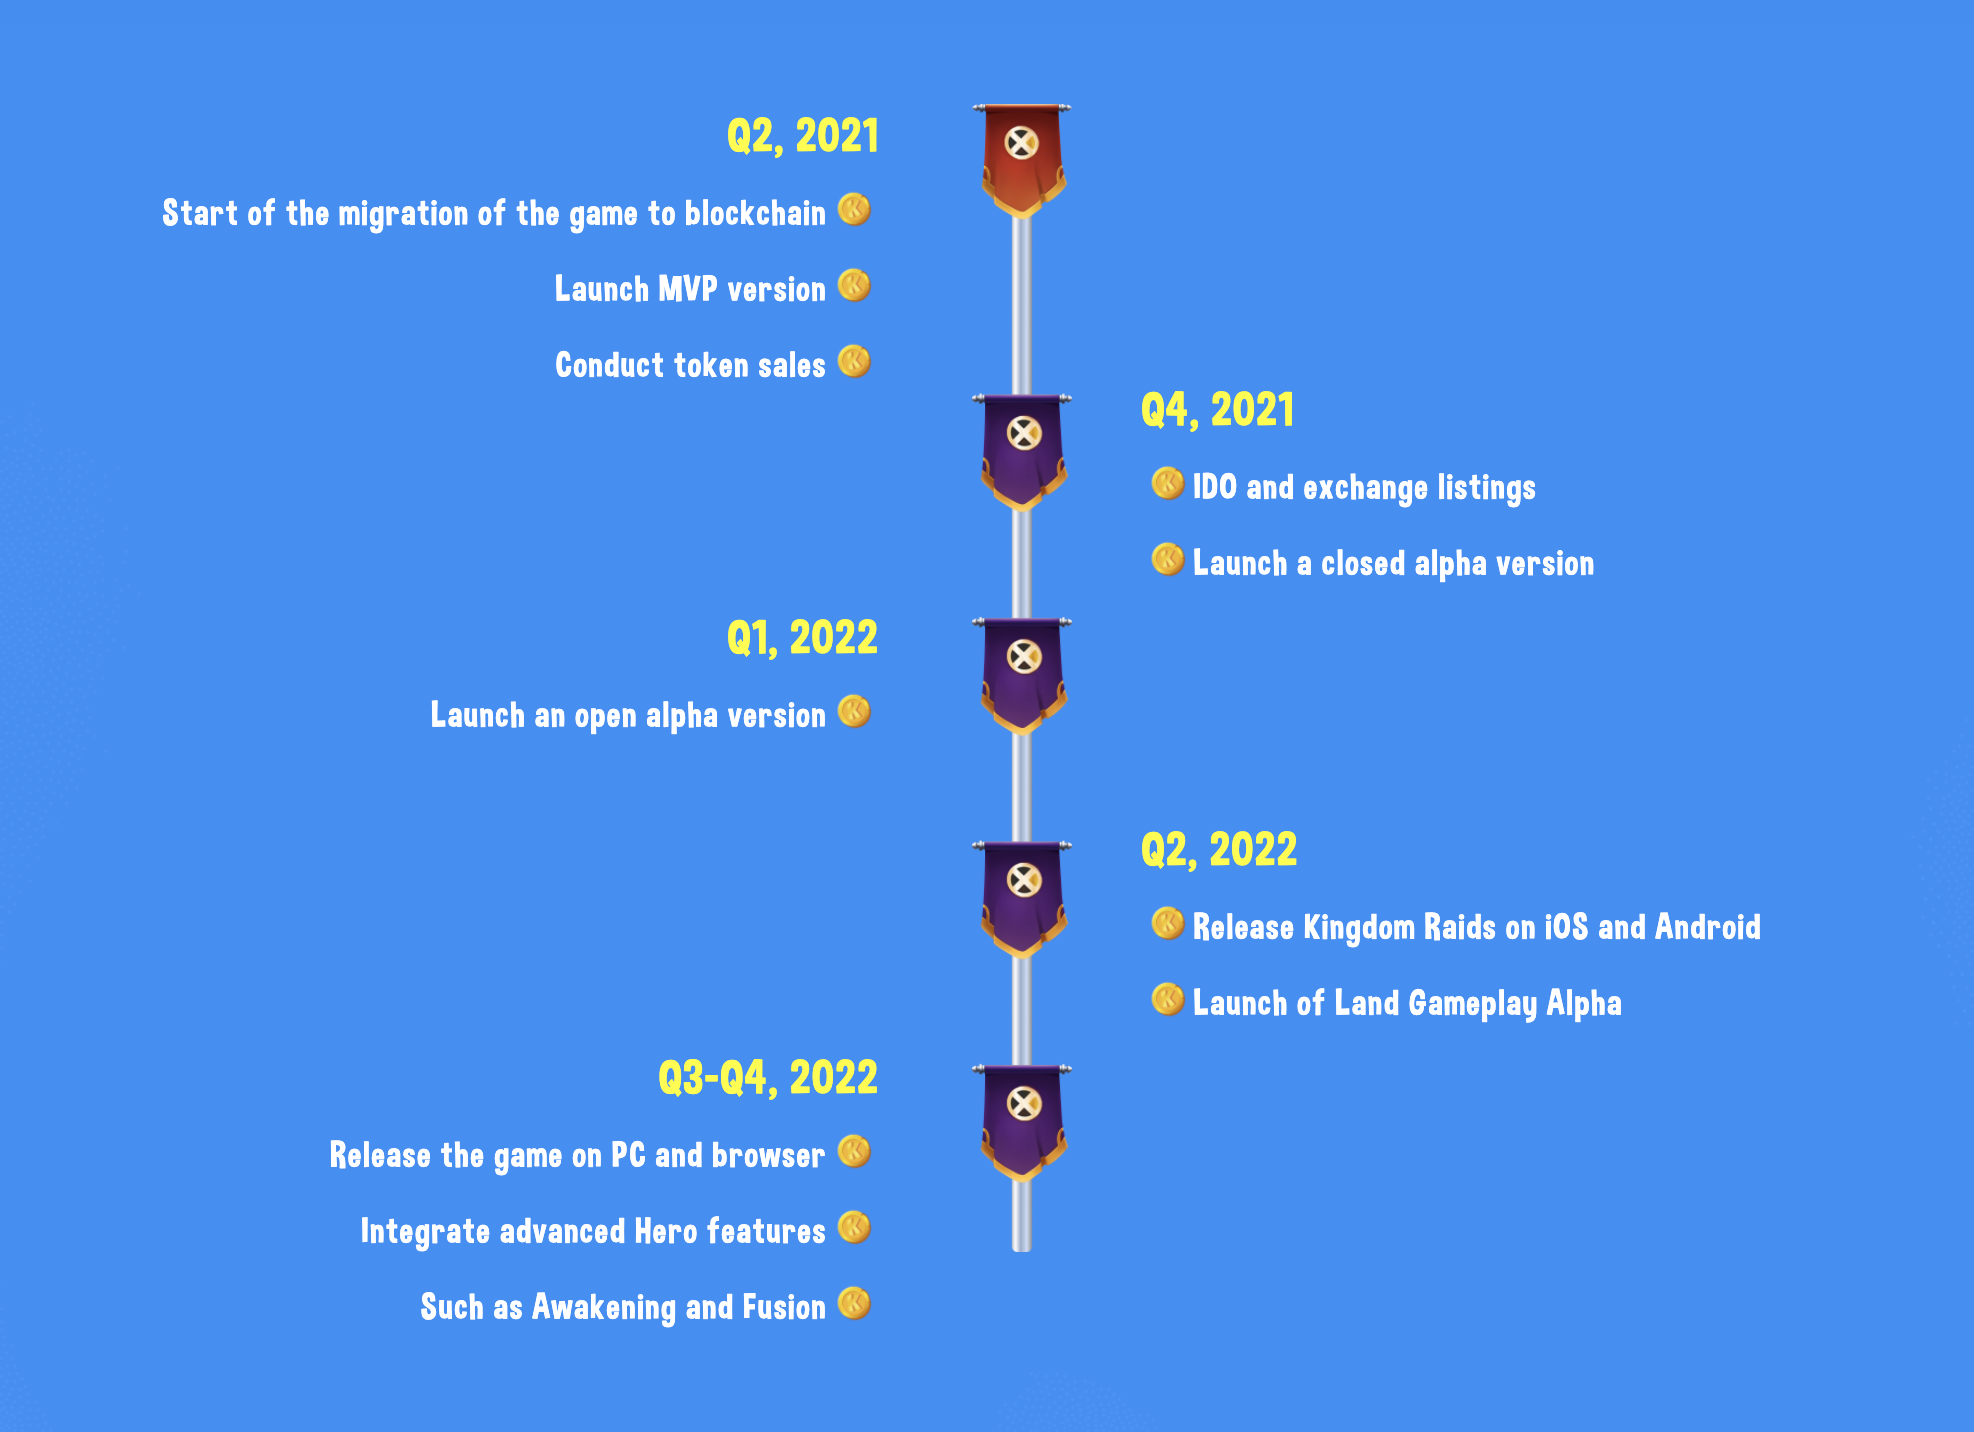 Kingdom Raids Roadmap